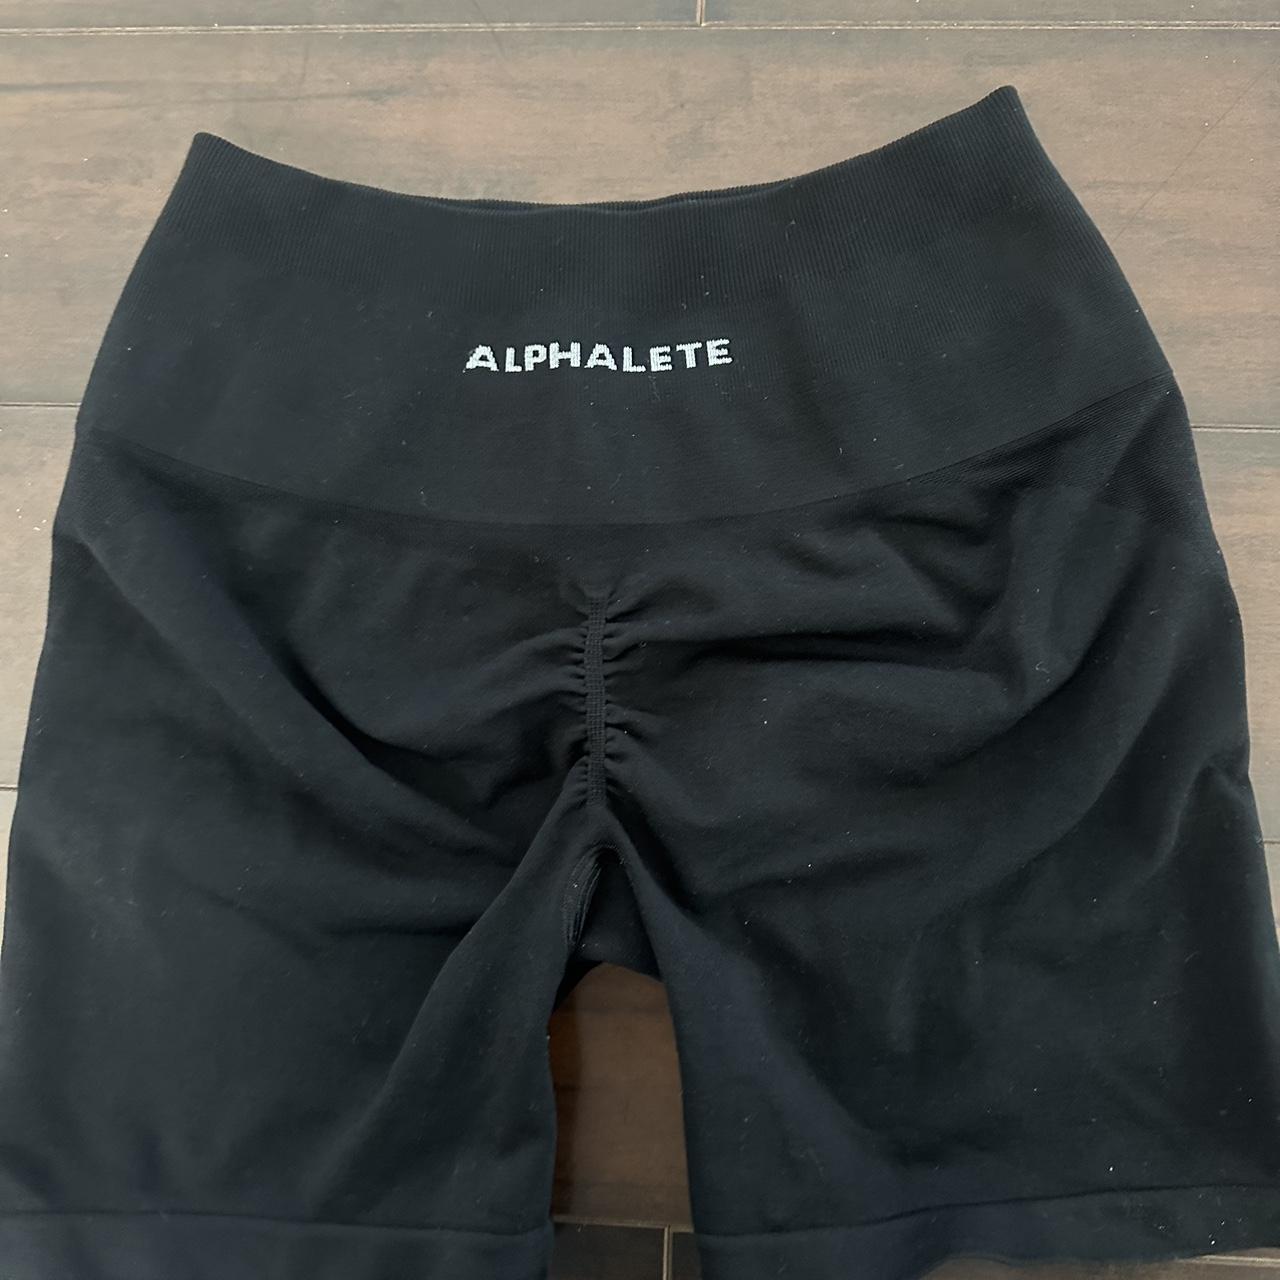 Alphalete Amplify Biker Shorts - Canteen - Medium/MD - NWOT!